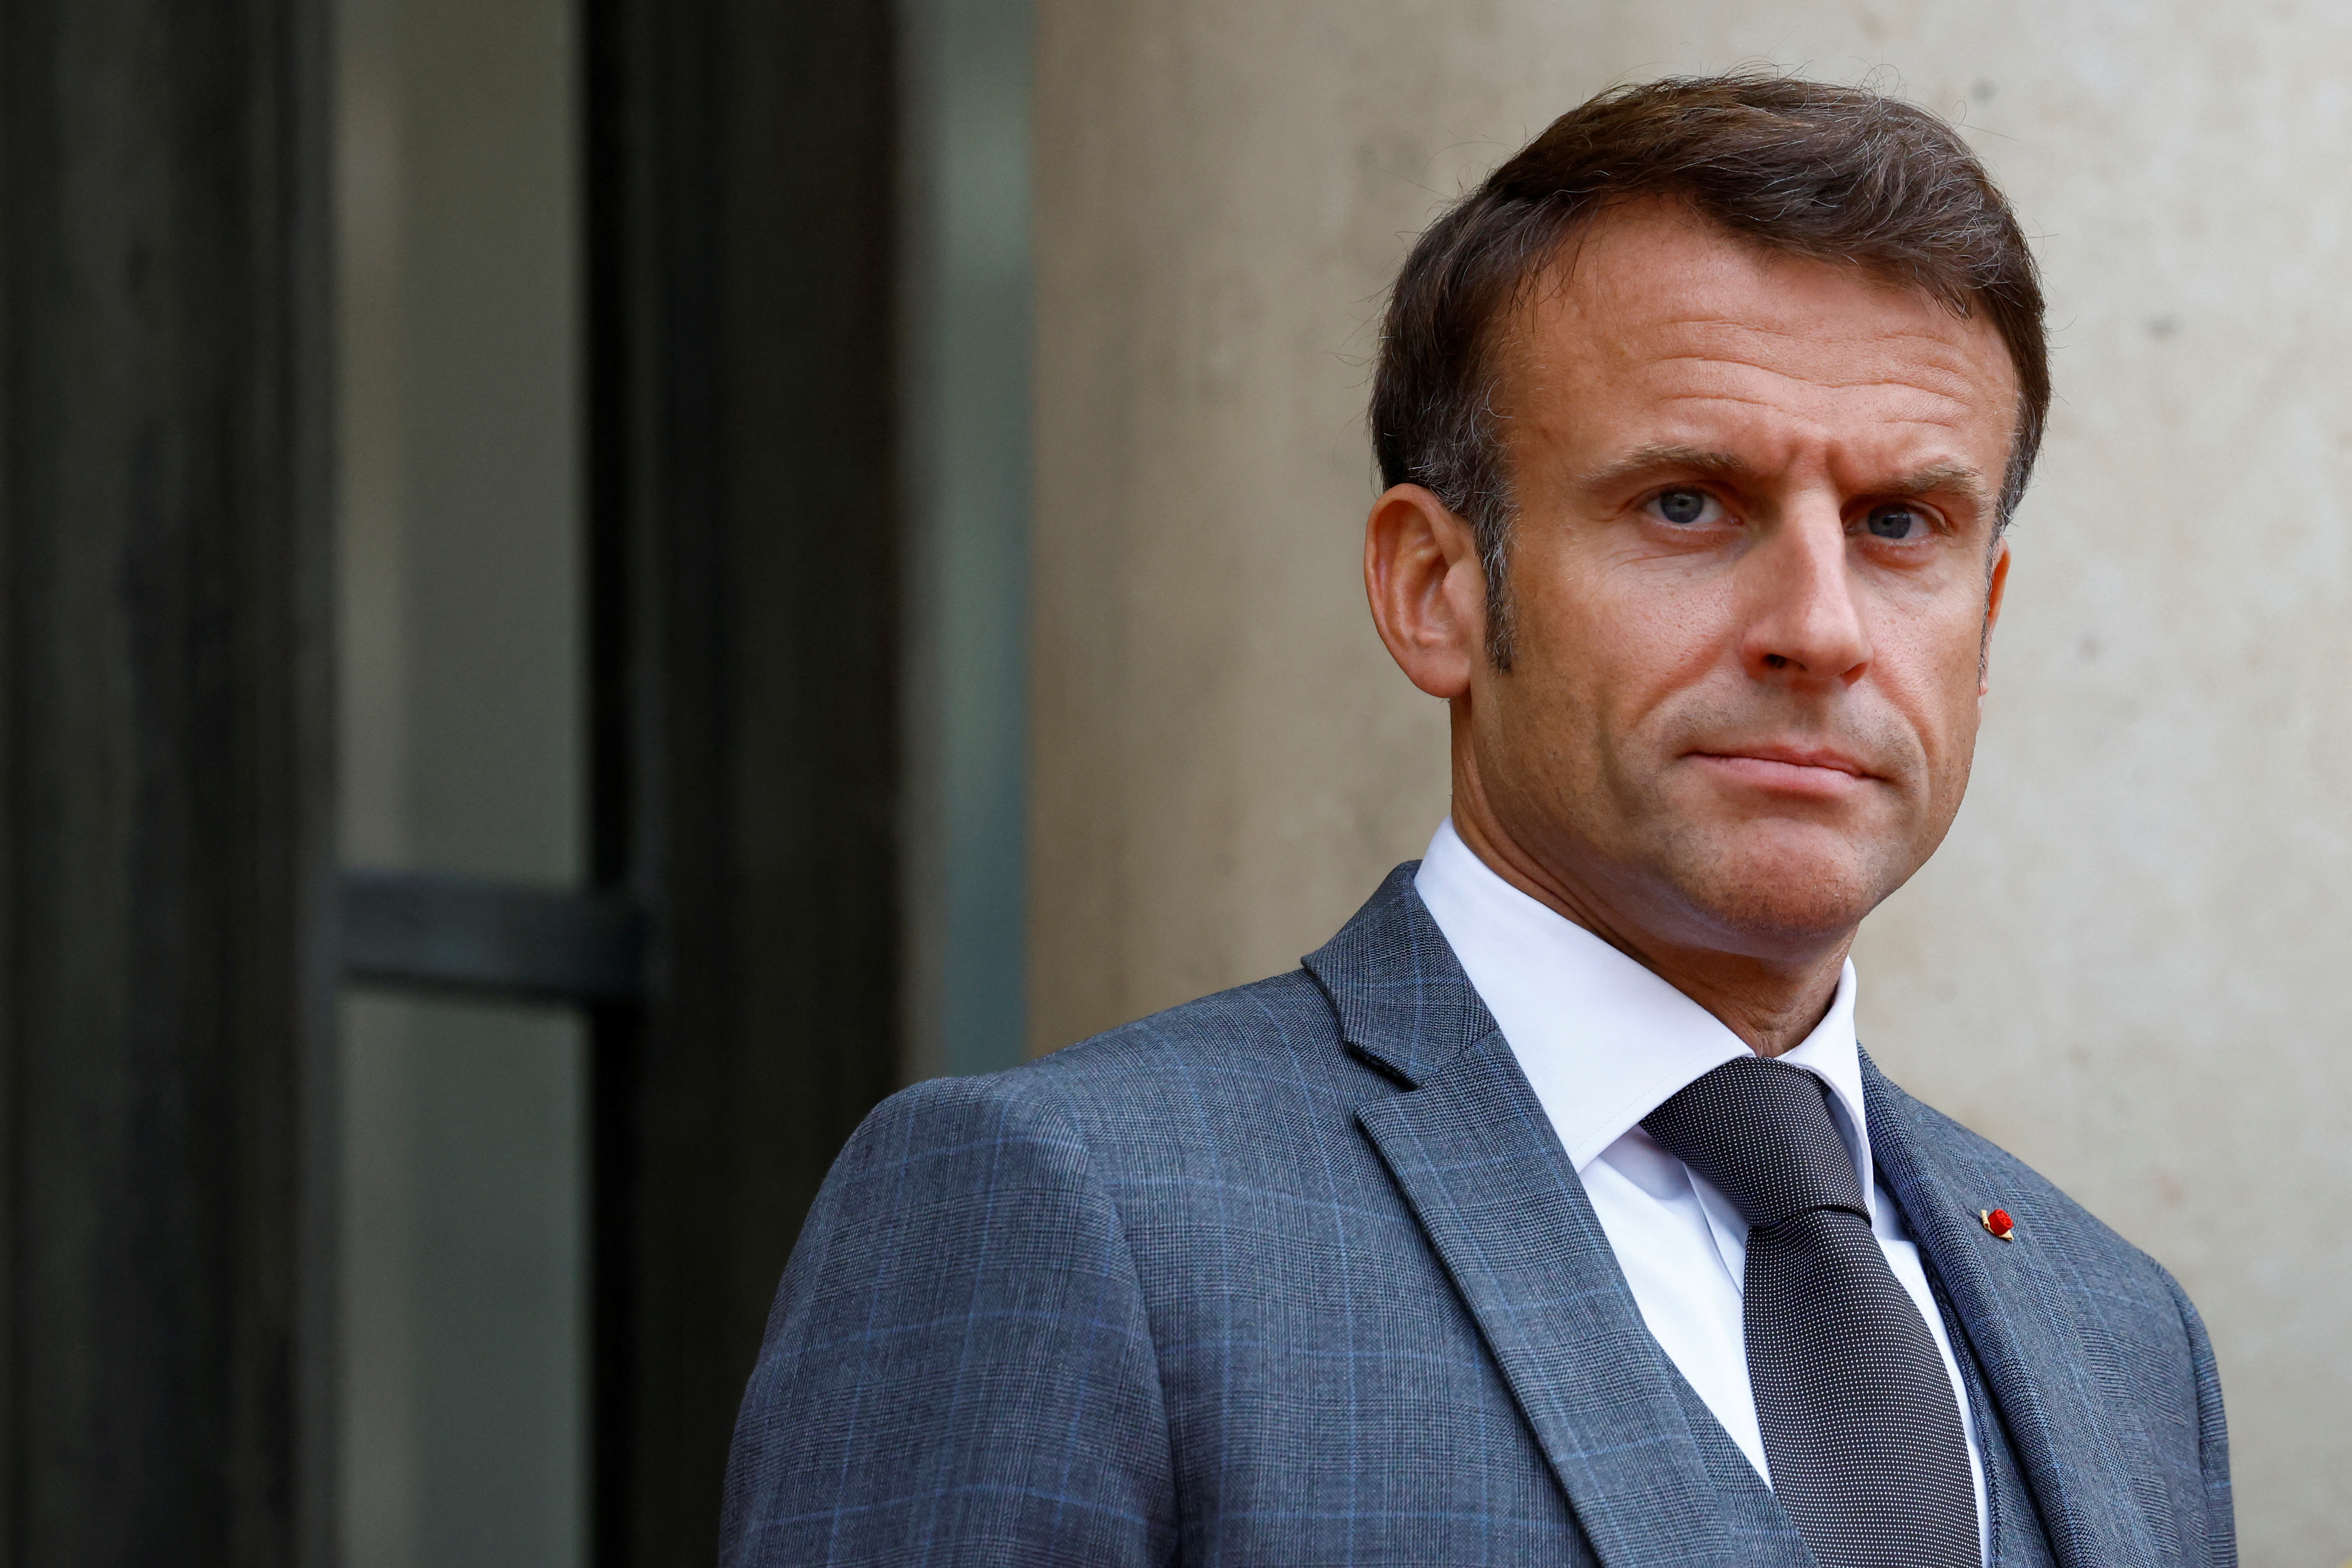 Otages, pause humanitaire, solution politique... En Israël, Emmanuel Macron prône une visite « utile »